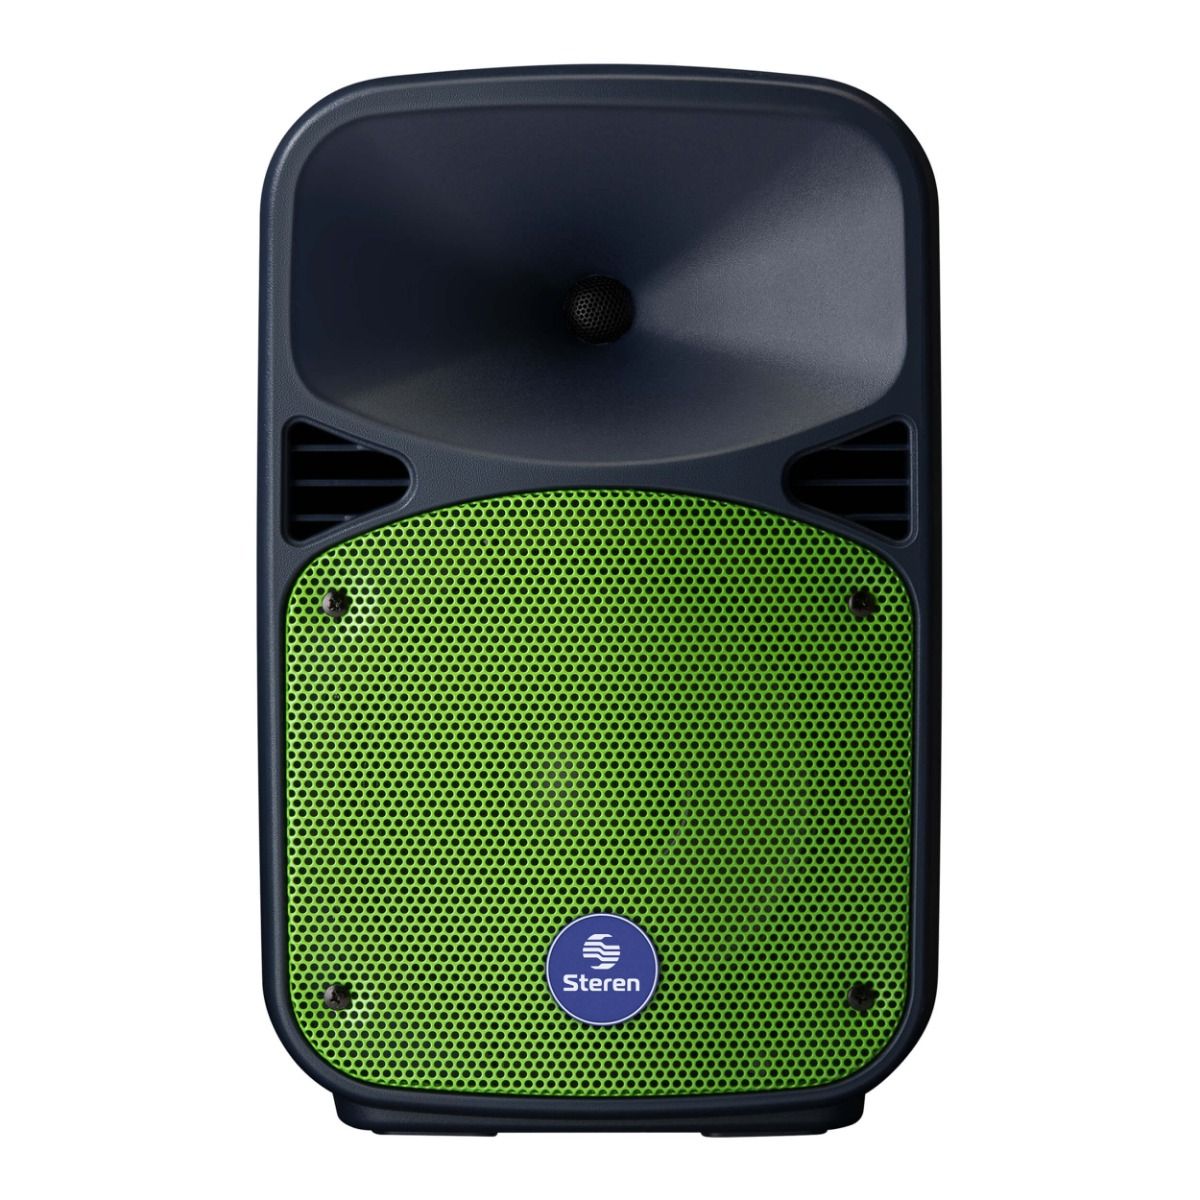 Cabina bafle parlante de 8 bluetooth MP3 radio FM incluye c